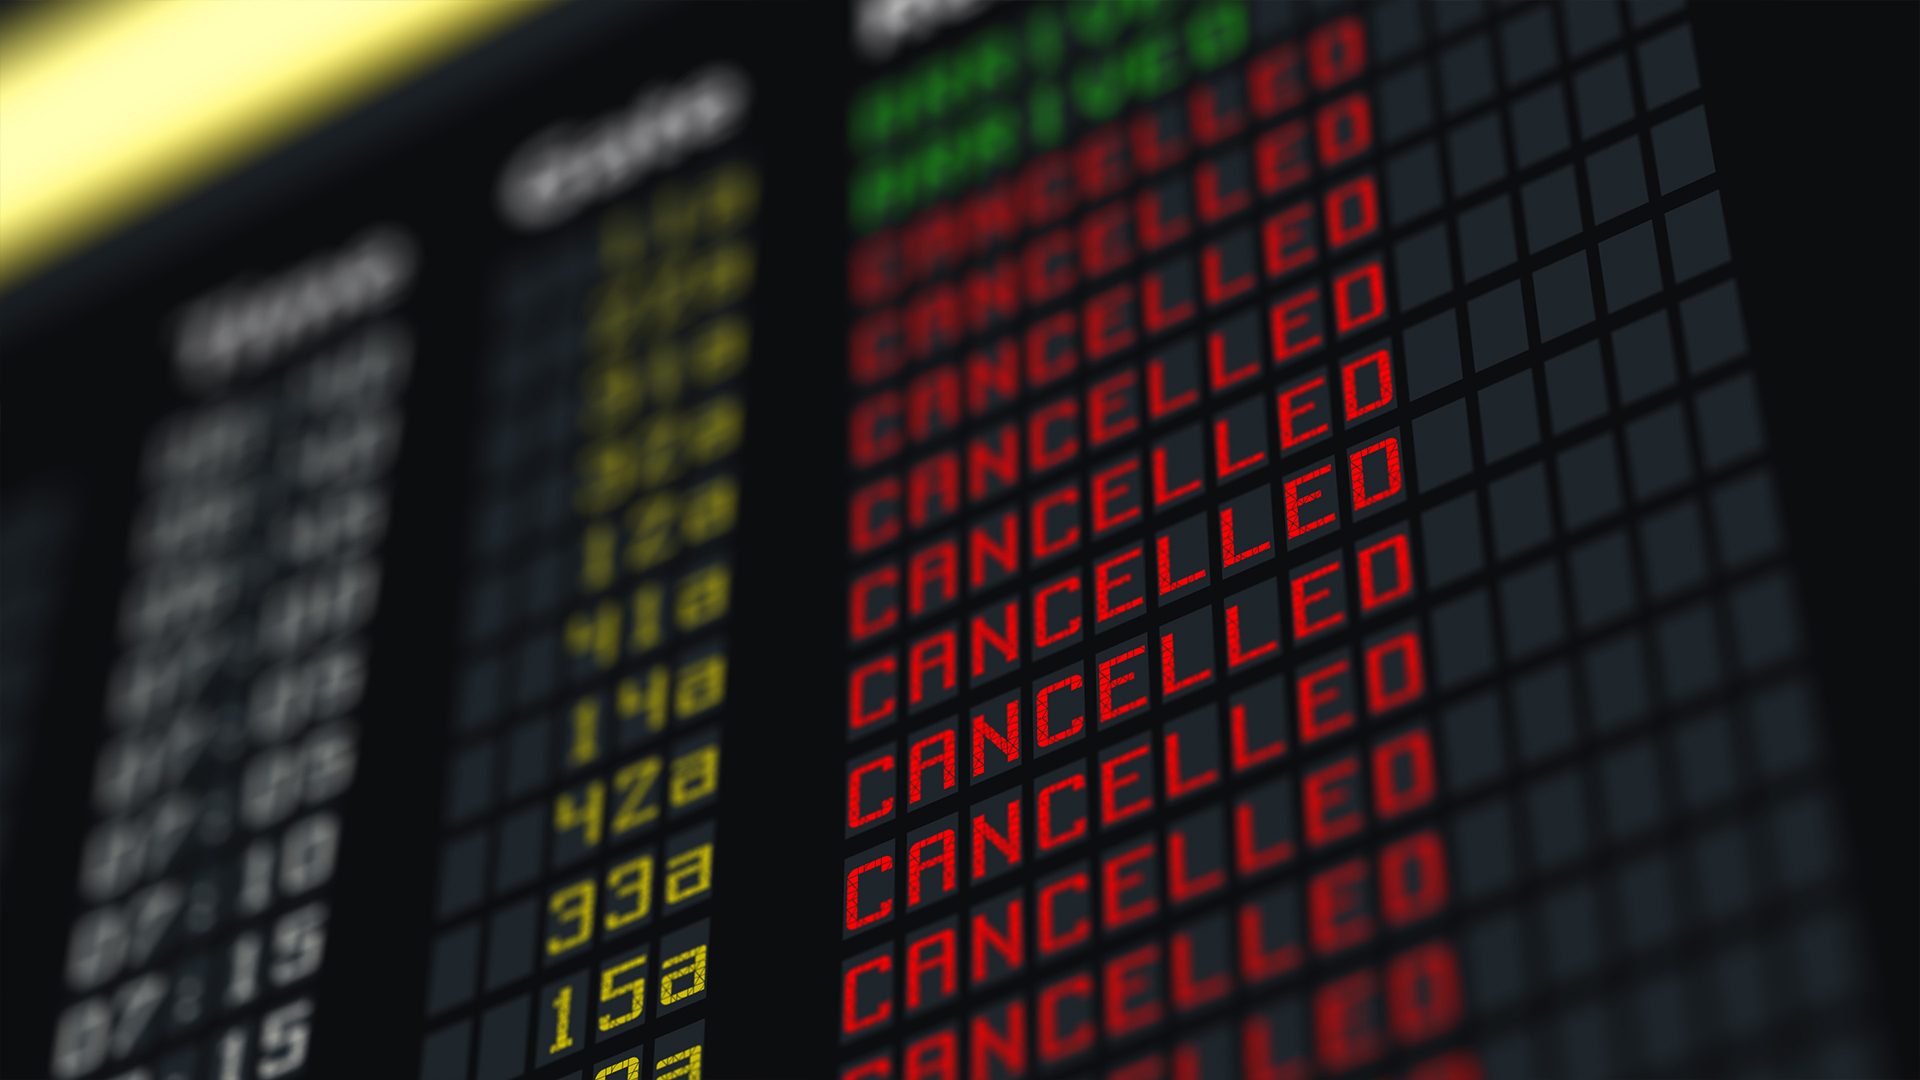 Canceled flights due to Typhoon Odette: December 18-19